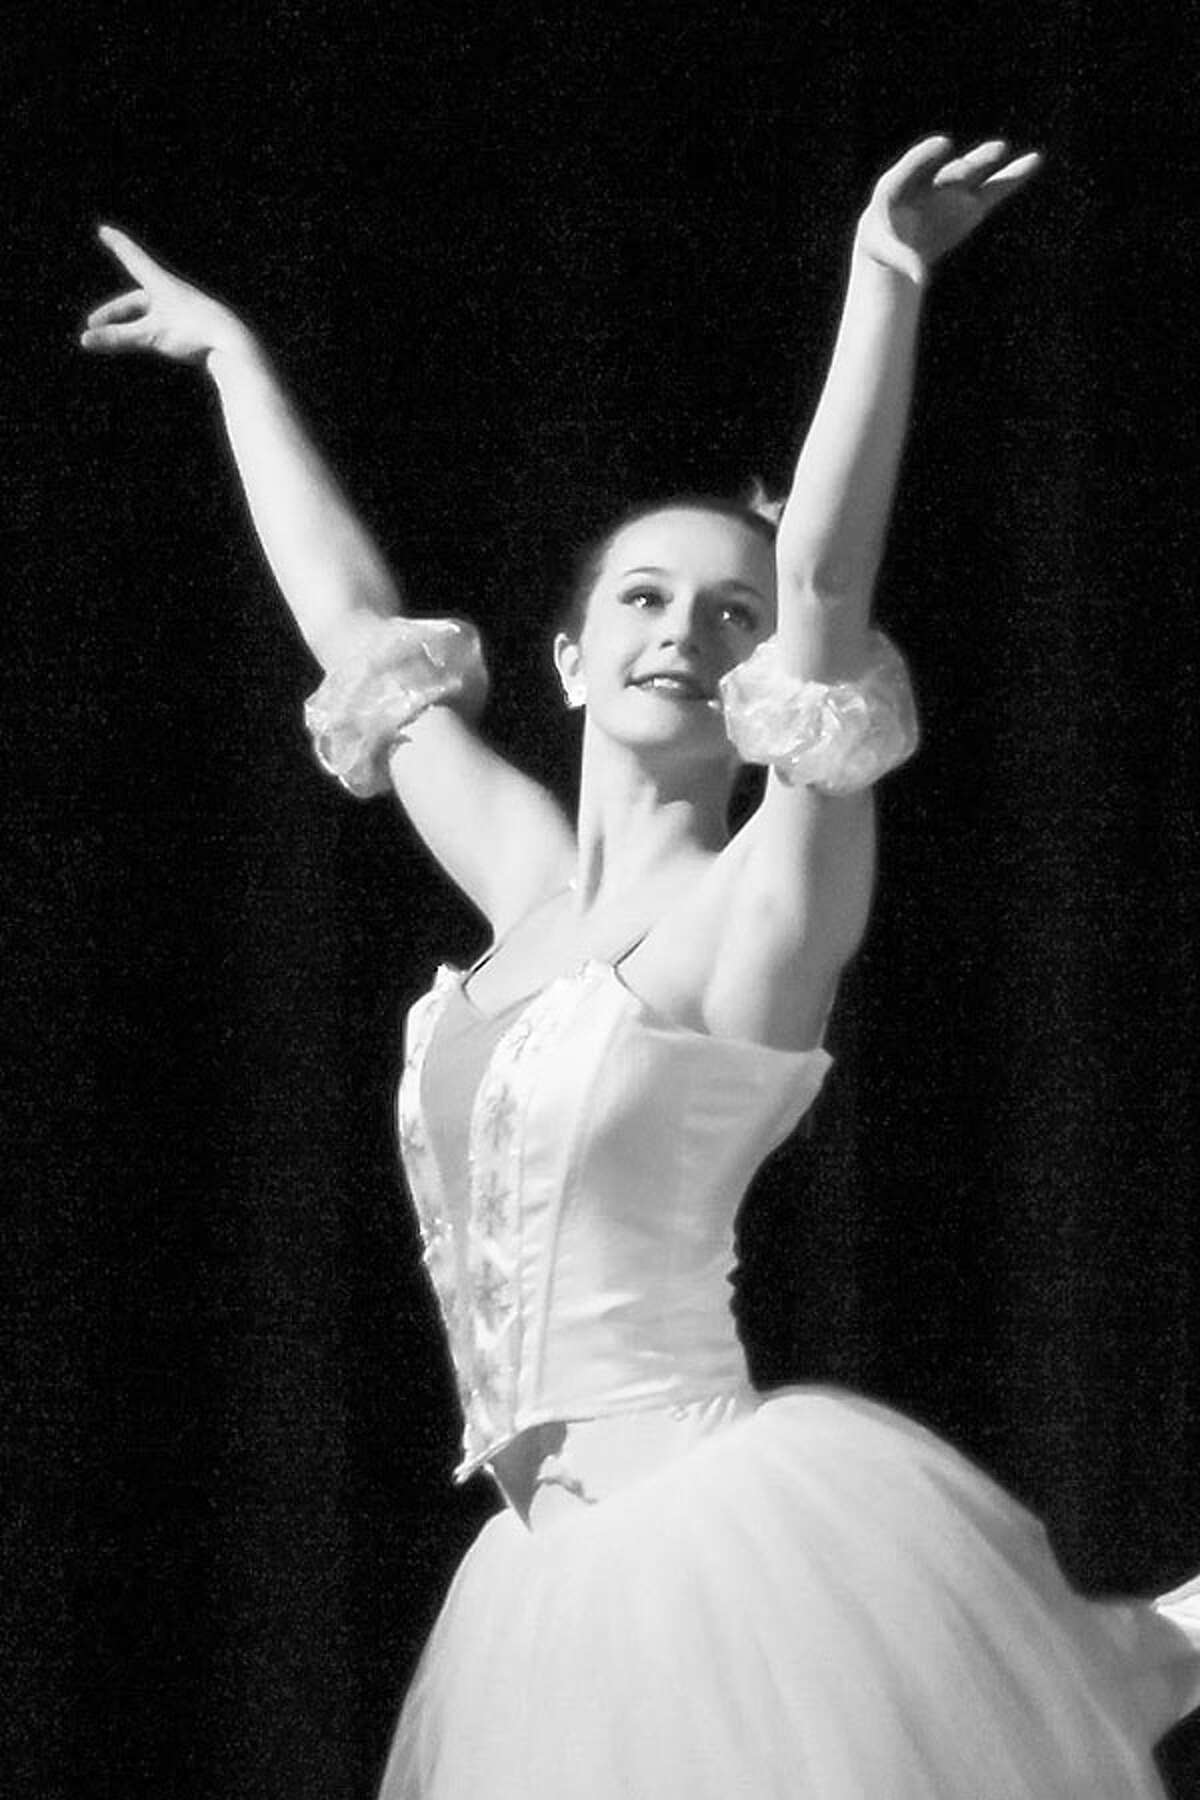 Rachel Castaldi in the Ridgefield School of Dance’s Nutcracker last year. — Steve White photo